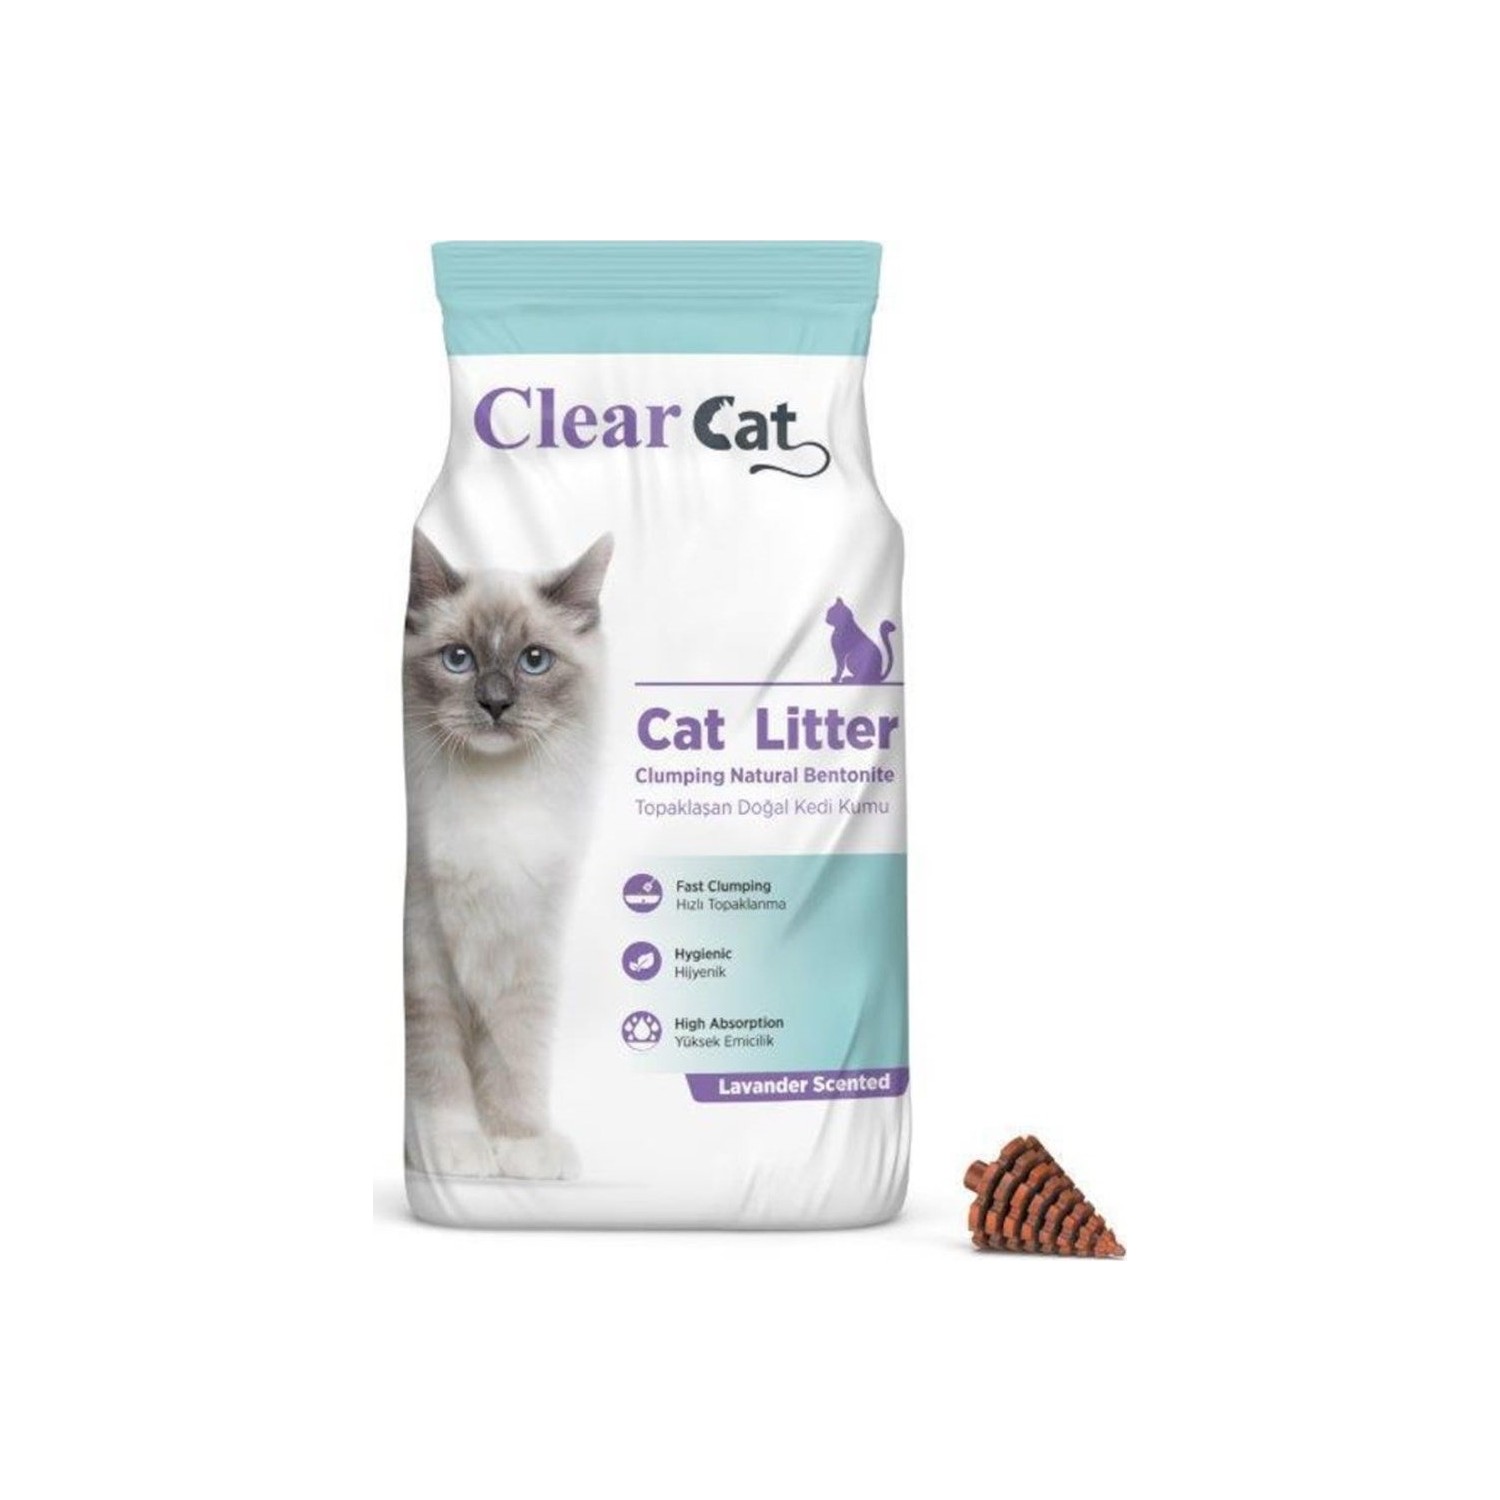 Clear Cat Lavanta Kokulu İnce Topaklaşan Bentonit Kedi Kumu 5 KG